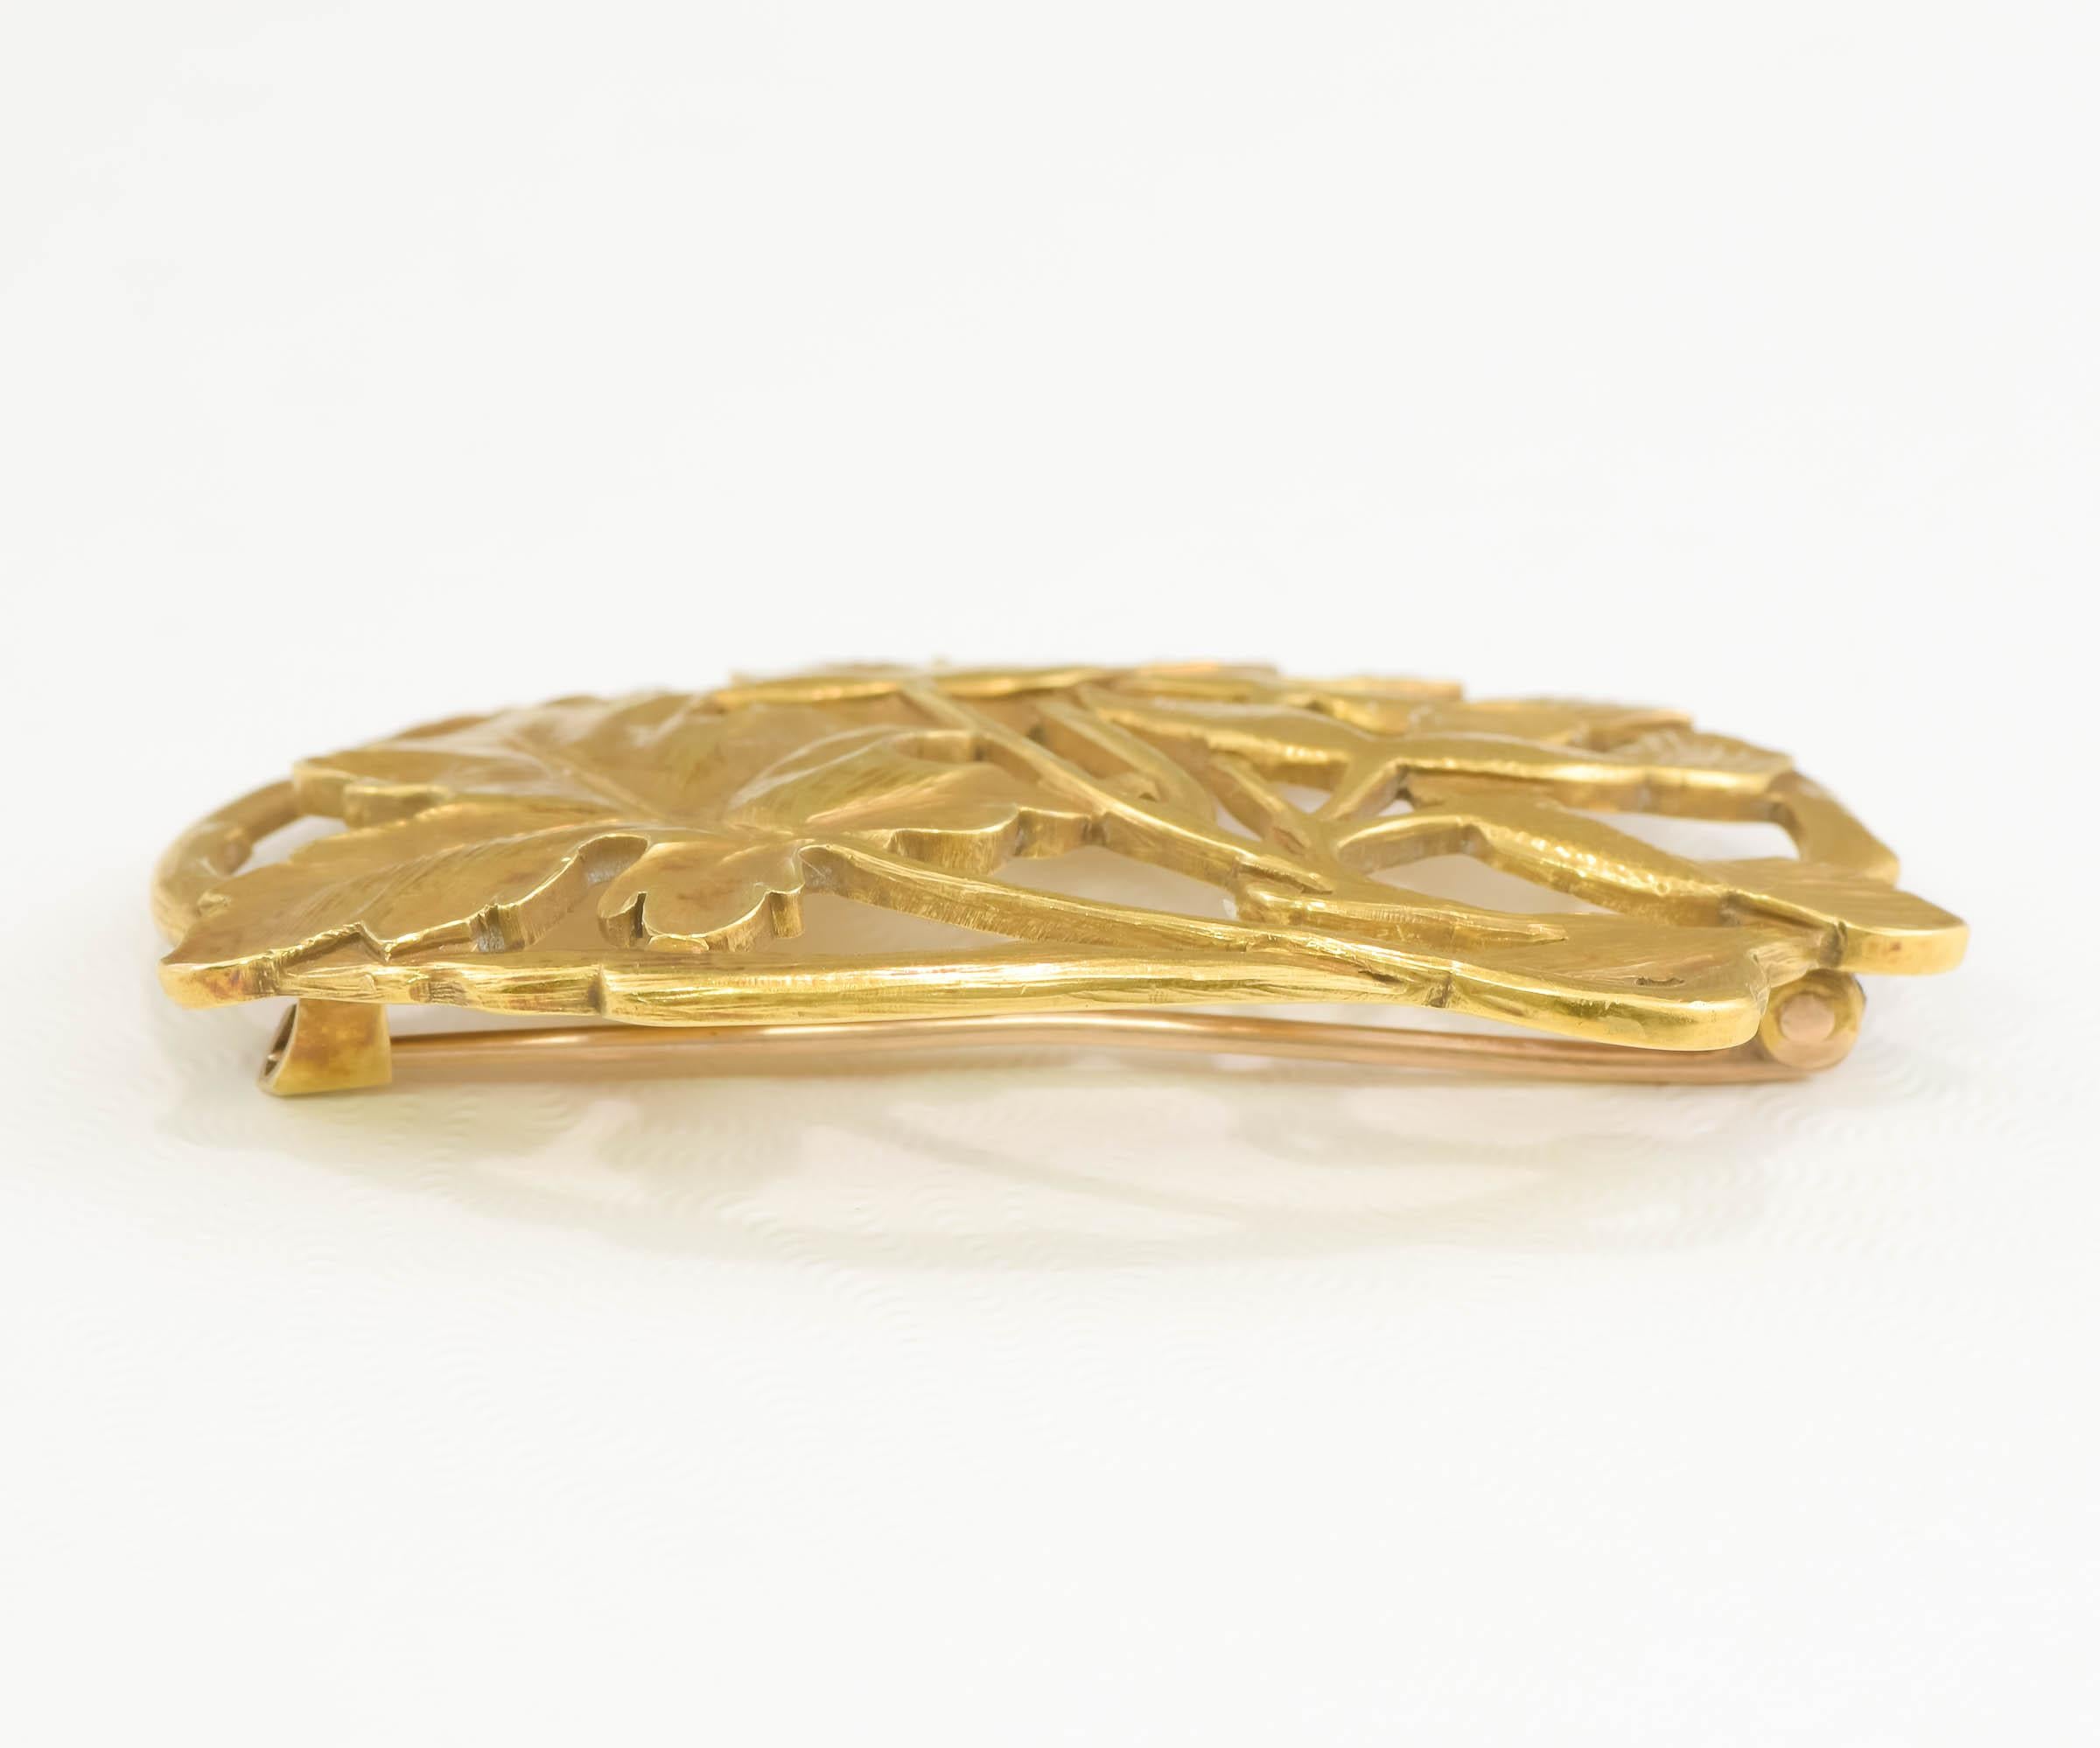 Antique Arts & Crafts 18K Gold Brooch by Potter Studio - Large Foliate Design 1